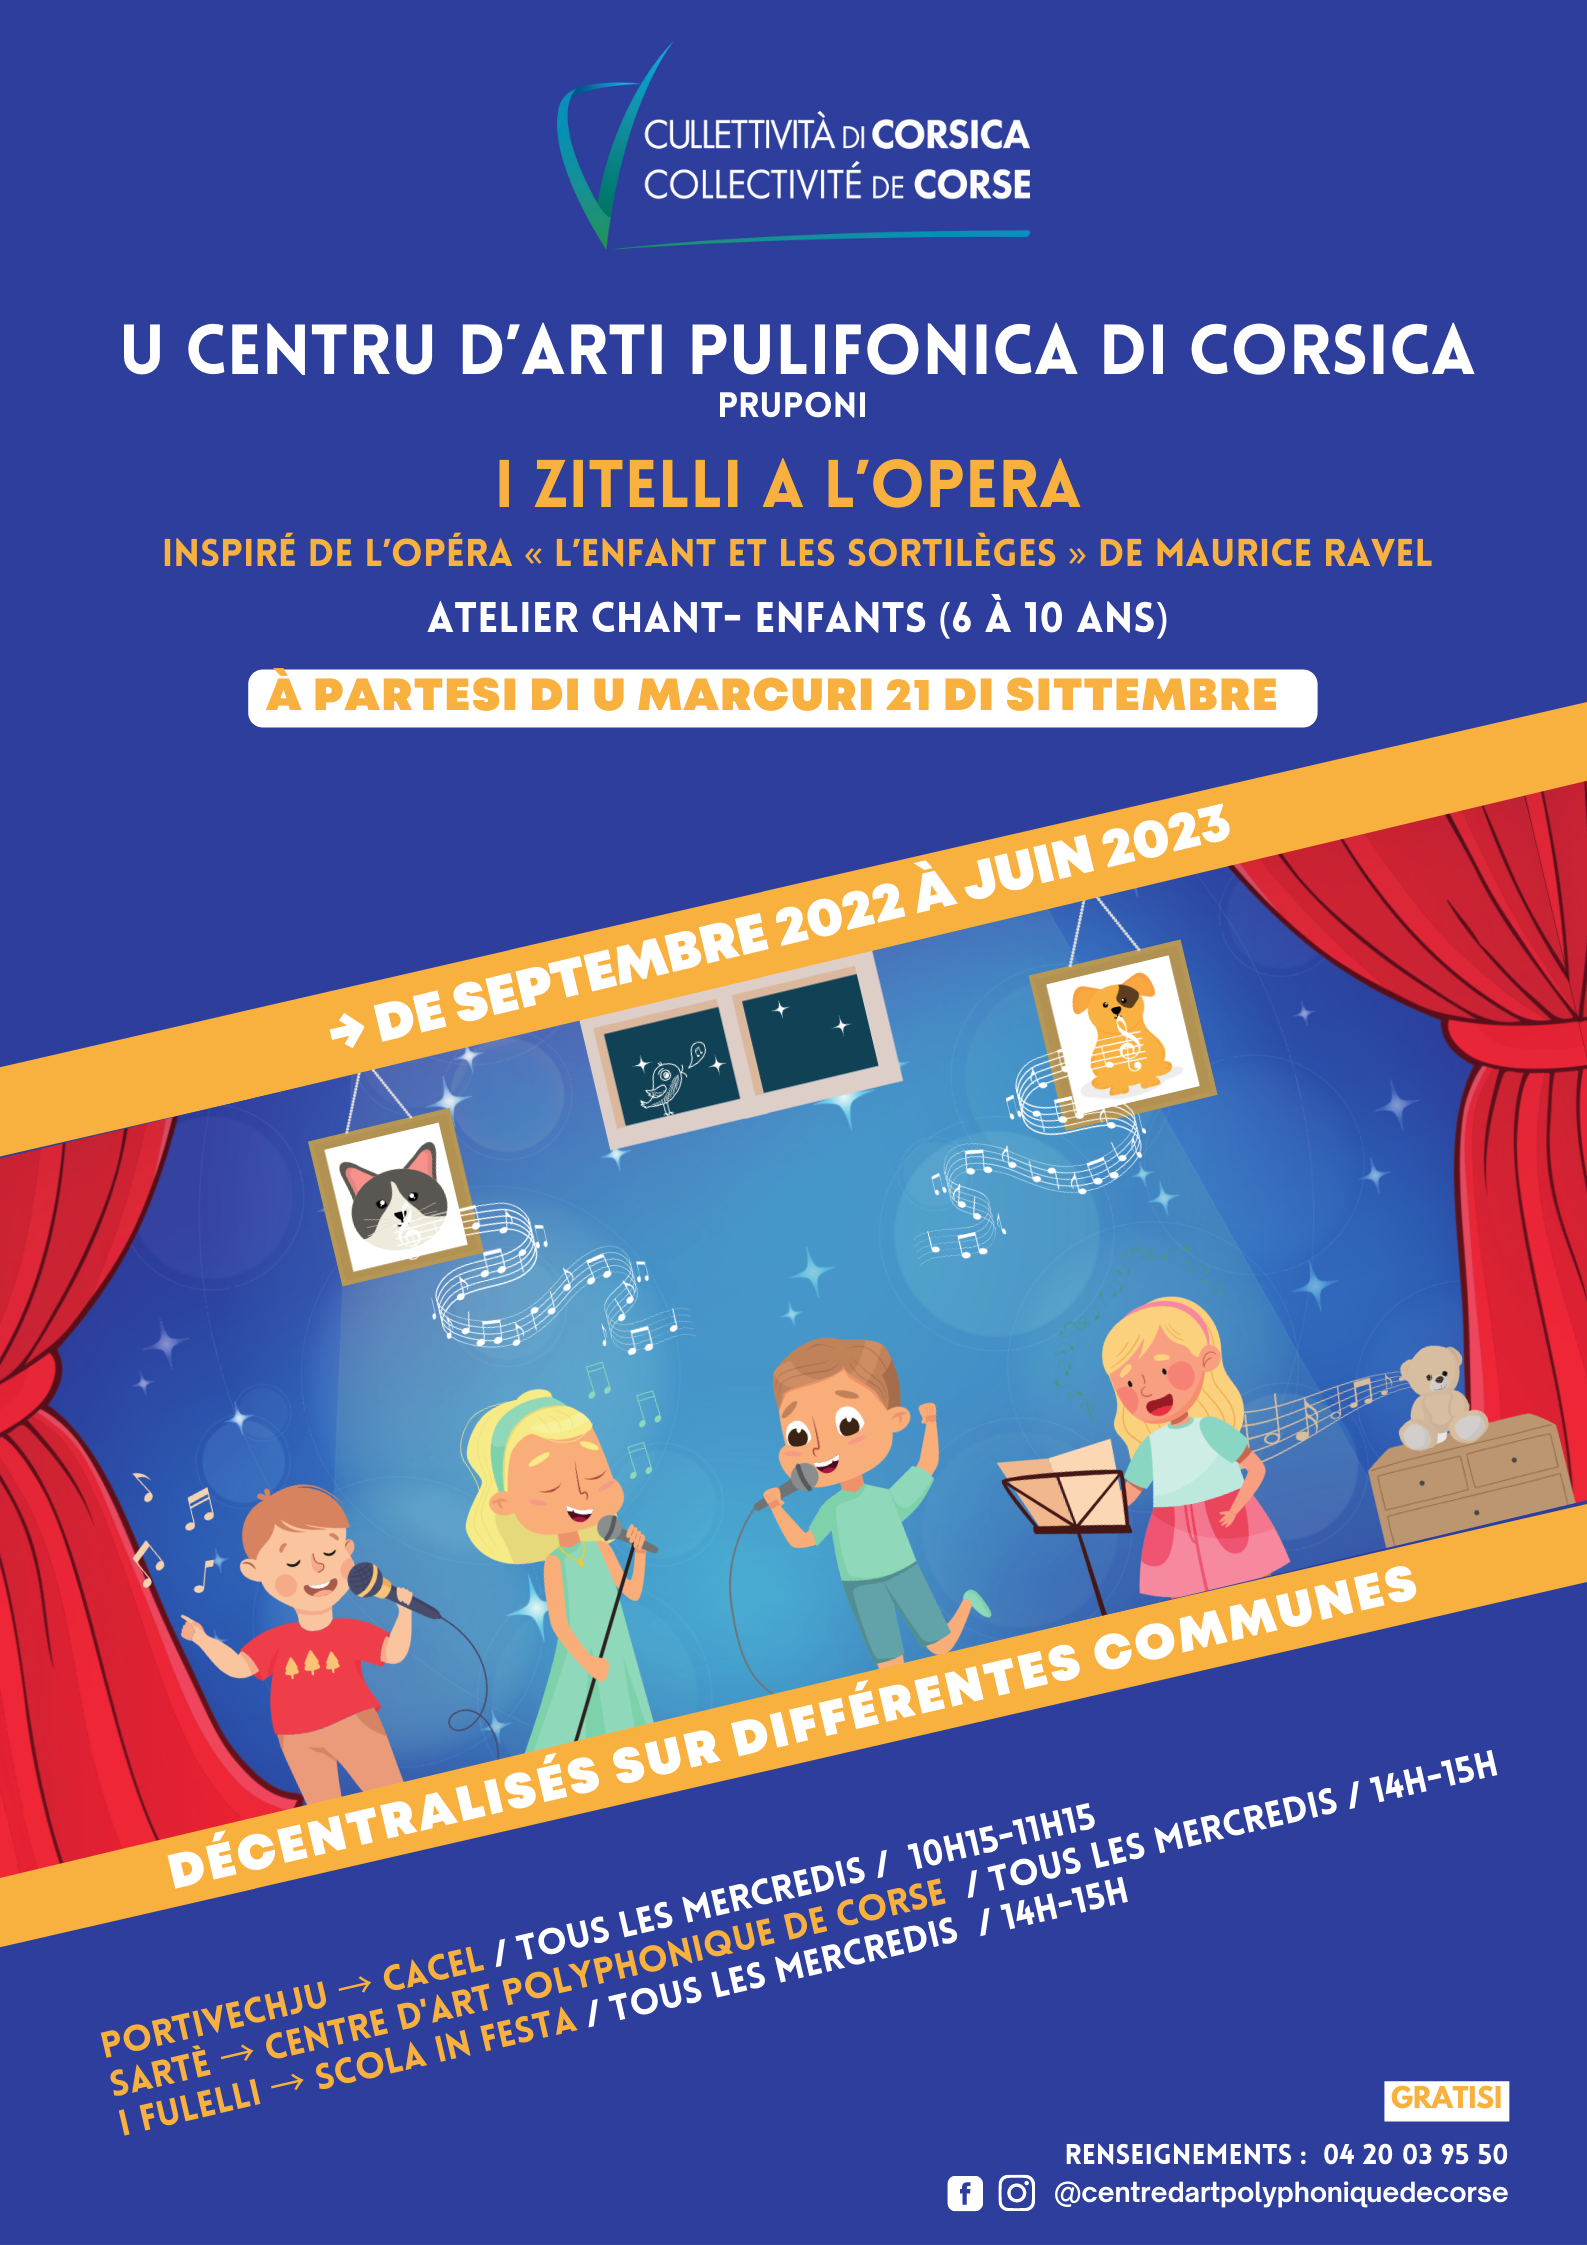 Atelier de chant pour les enfants "I ZITELLI À l’OPERA" dirigé par Julia Knecht proposé par Centre d'Art Polyphonique de Corse